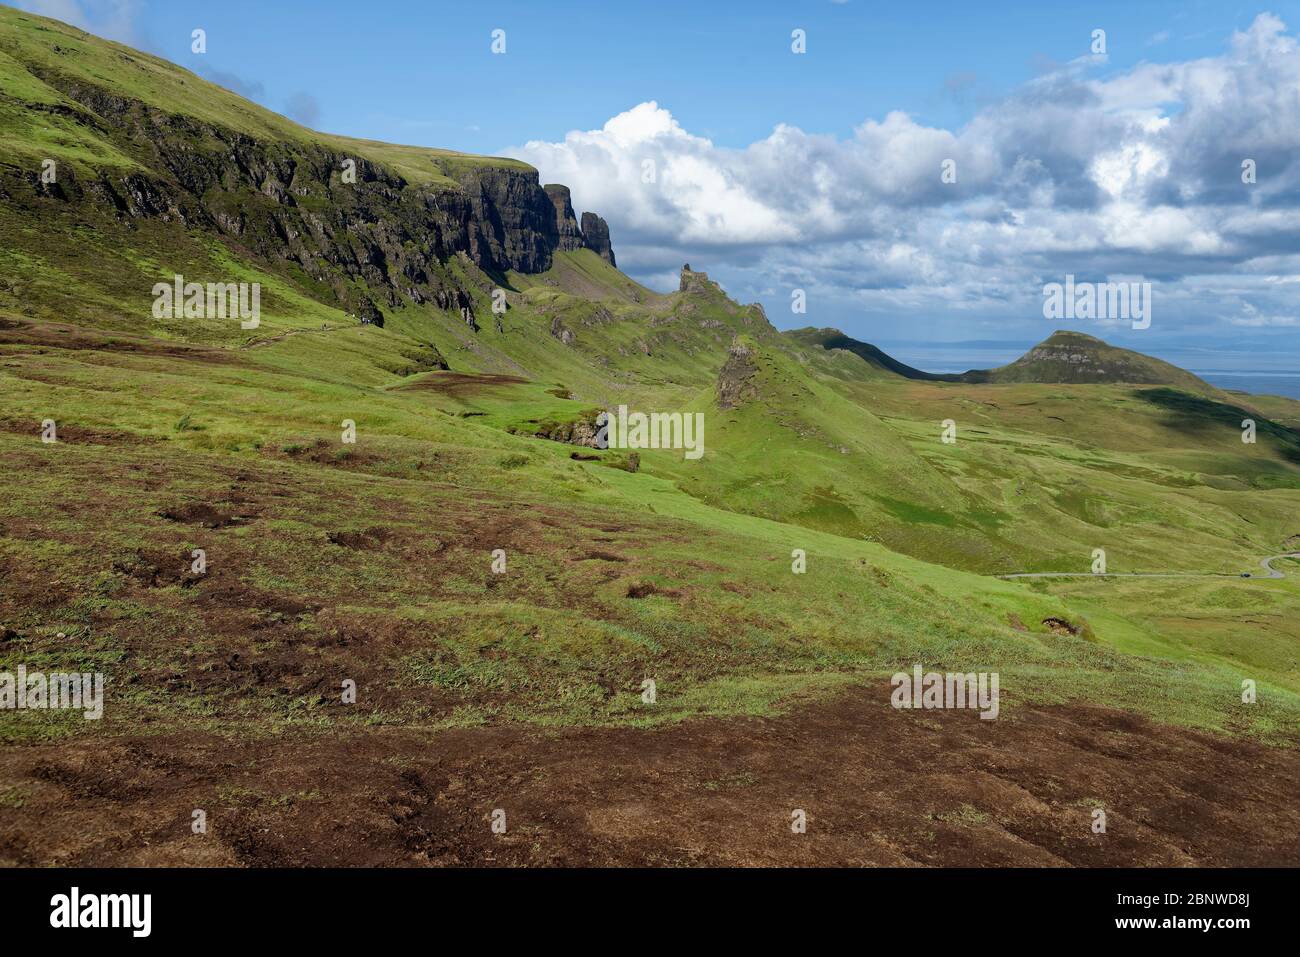 Klippen des Quiraing mit dem Gefängnis (Mitte) & Dun Mor (rechter Gipfel) Trotternish Ridge, Isle of Skye, Schottland, Großbritannien Stockfoto